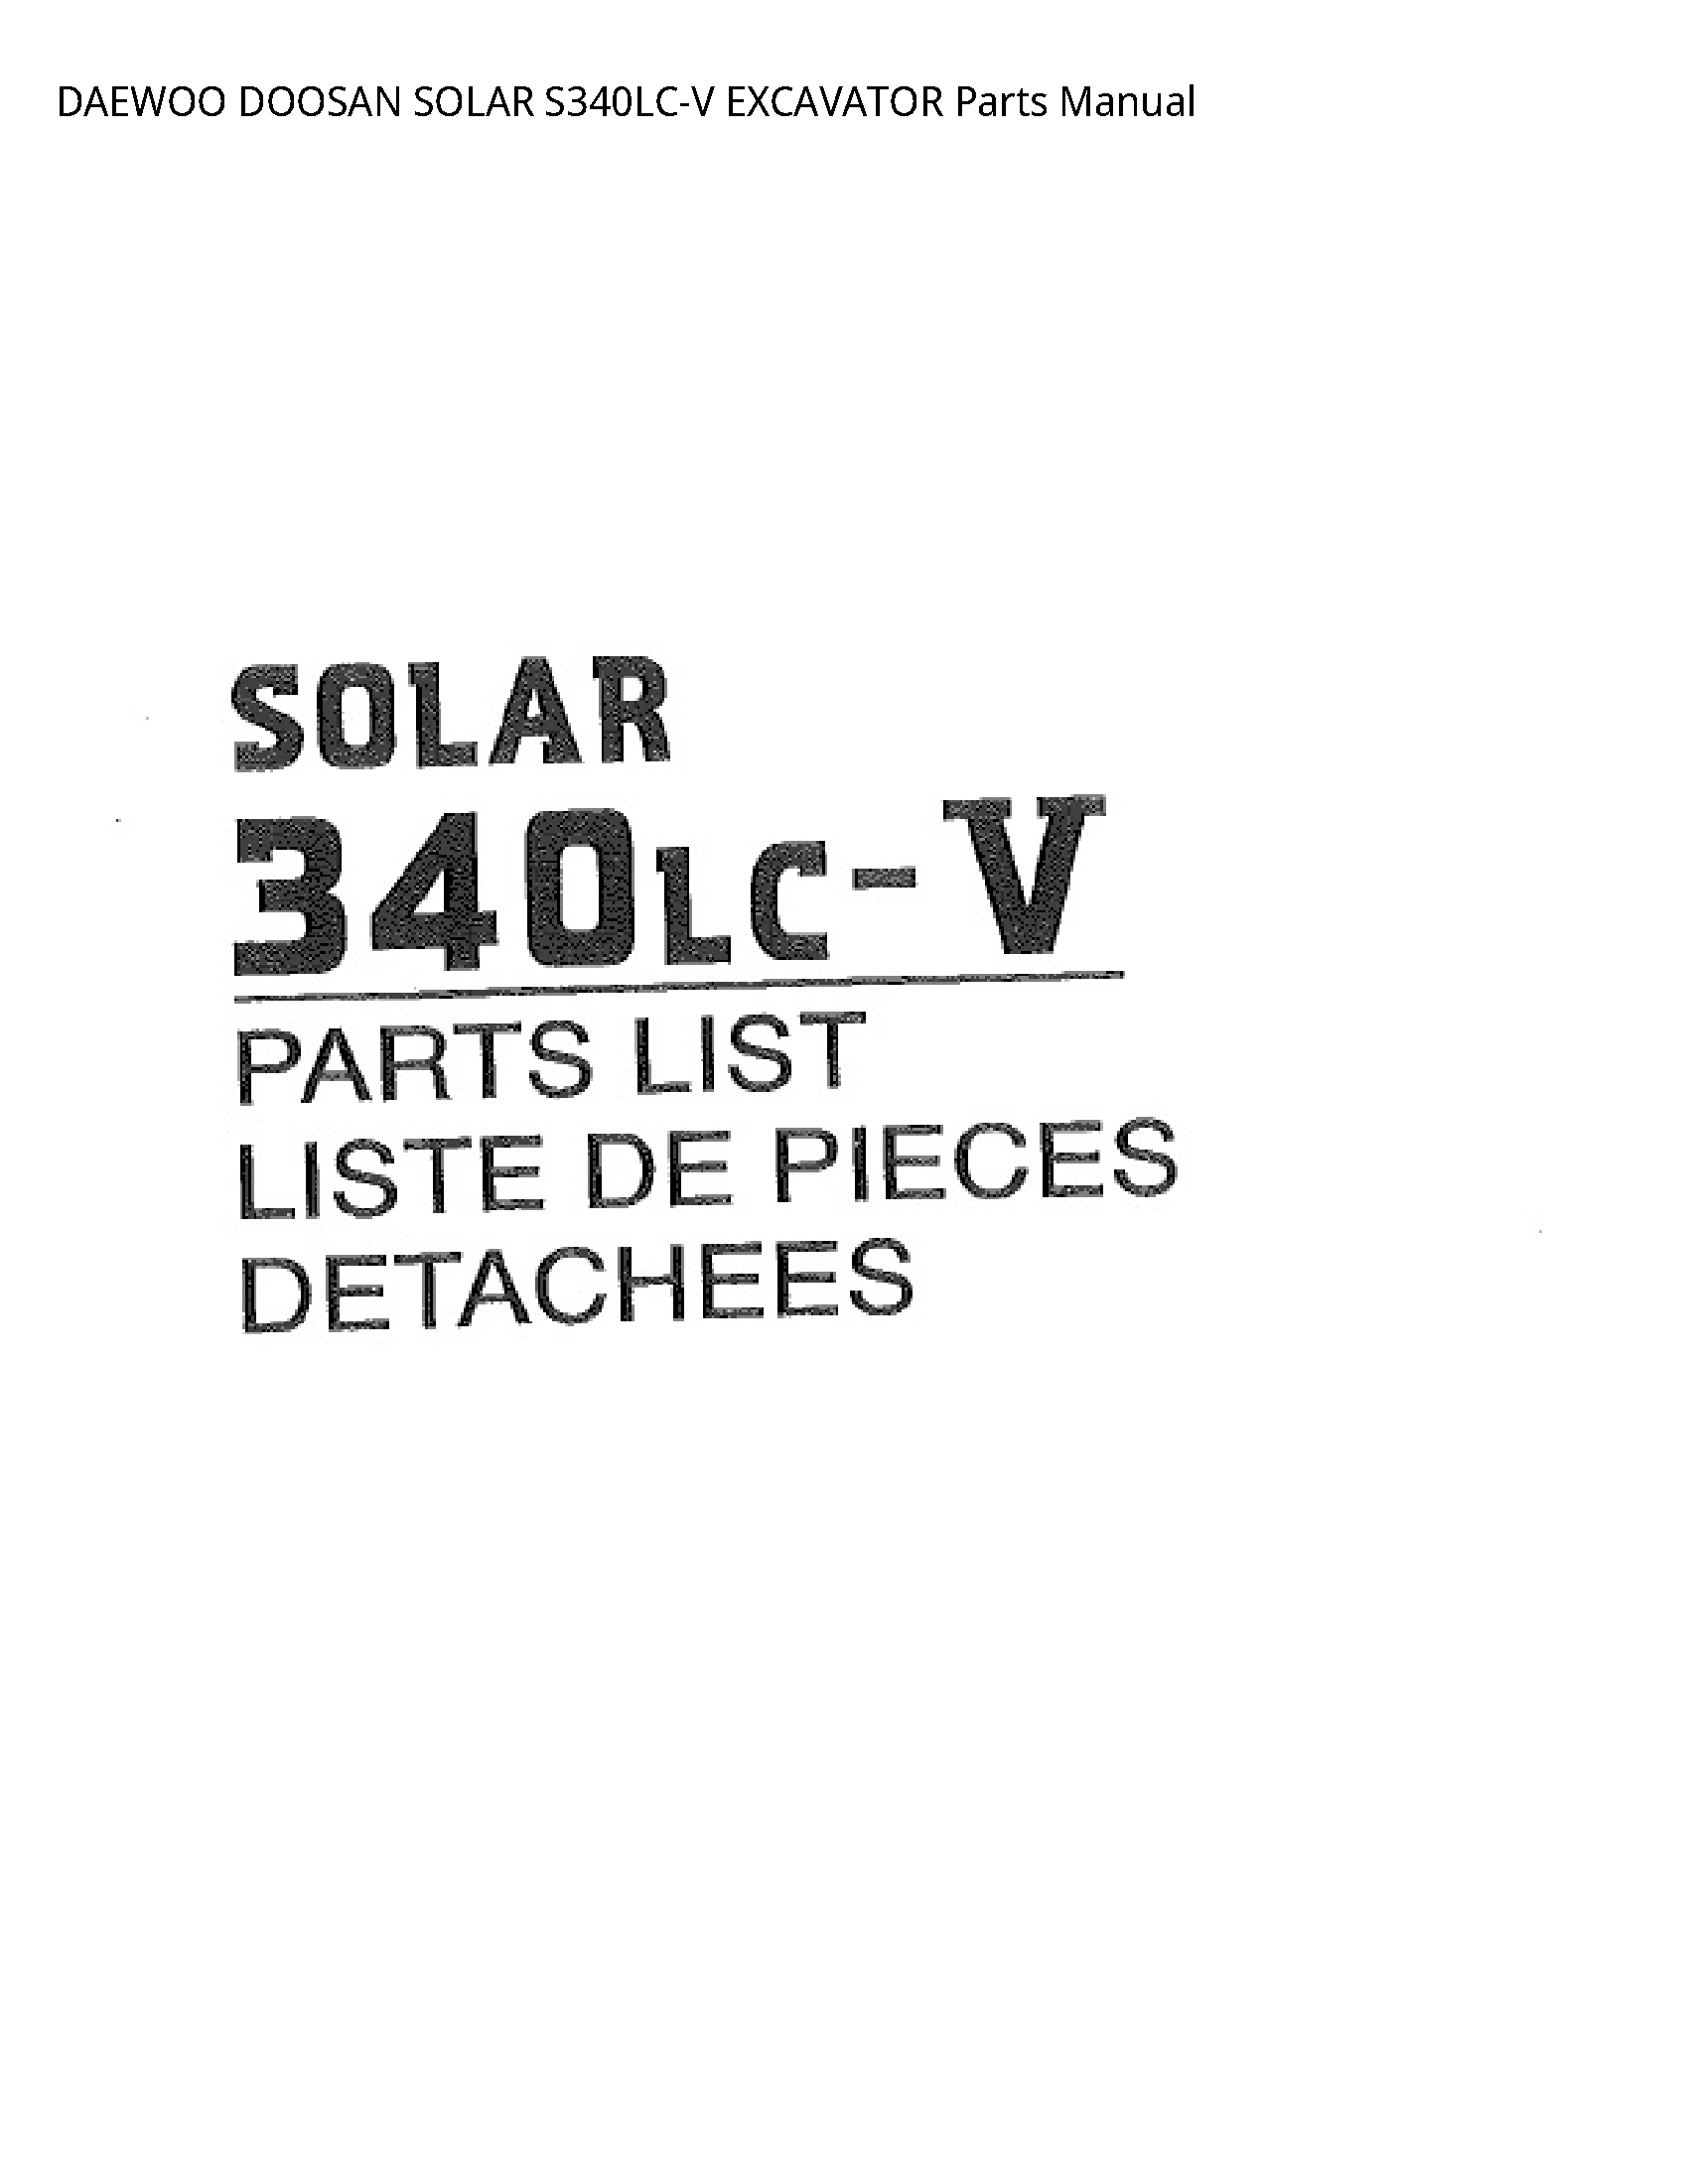 Daewoo Doosan S340LC-V SOLAR EXCAVATOR Parts manual